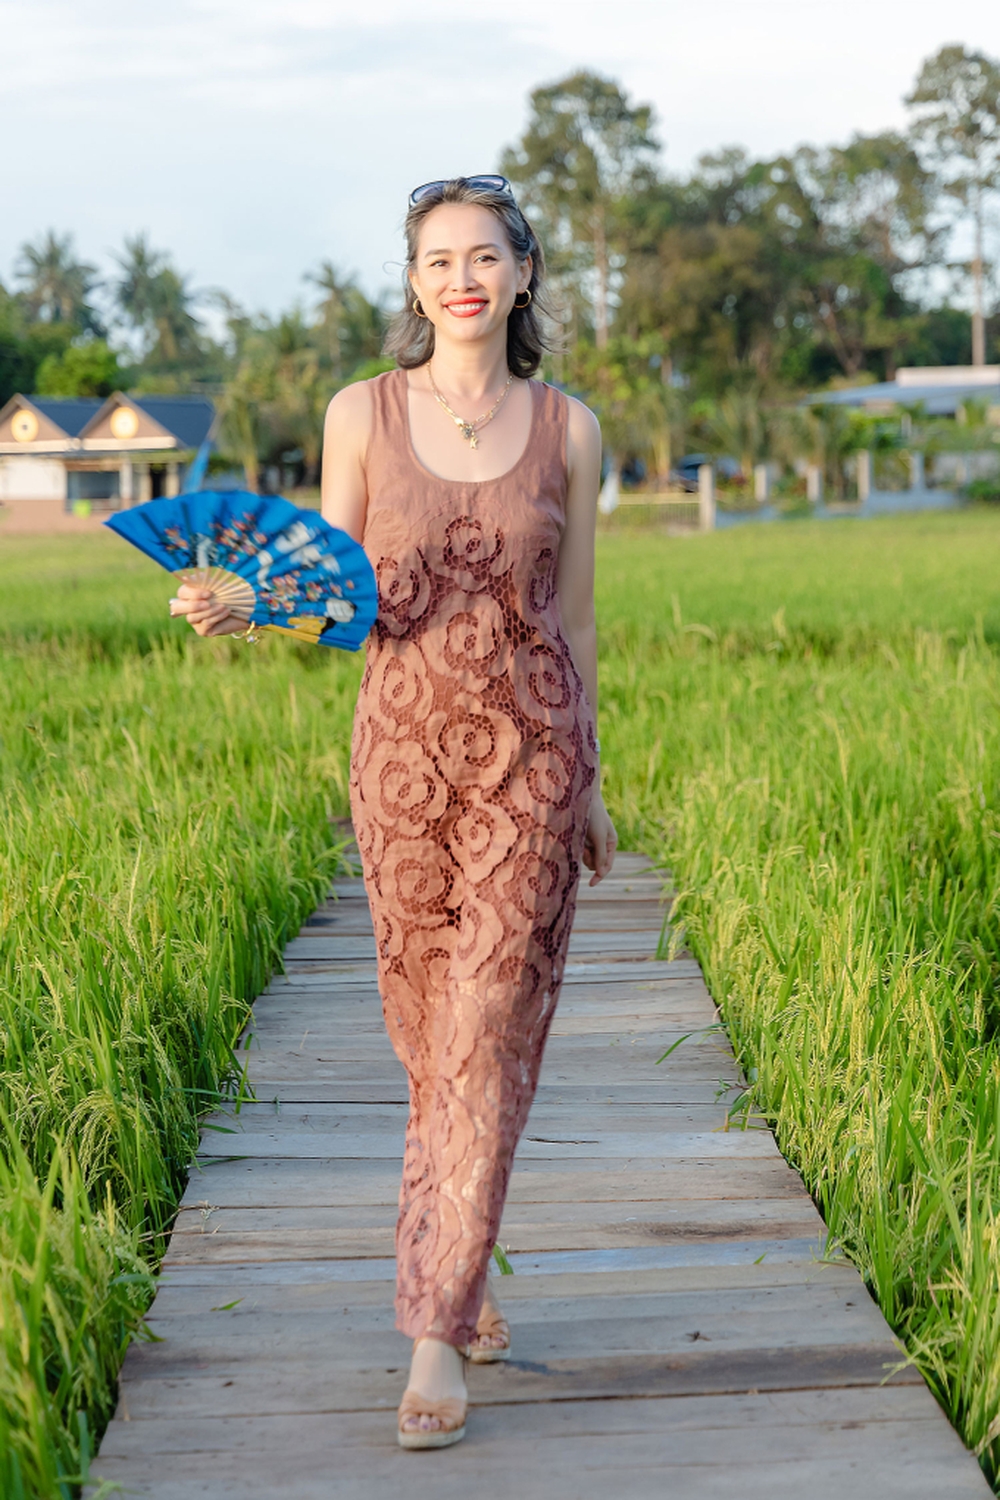 Hoa hậu Việt độc lạ bậc nhất: U50 đầu đầy tóc bạc vẫn đẹp quyến rũ, bỏ showbiz làm nông dân tại Mỹ - Ảnh 8.